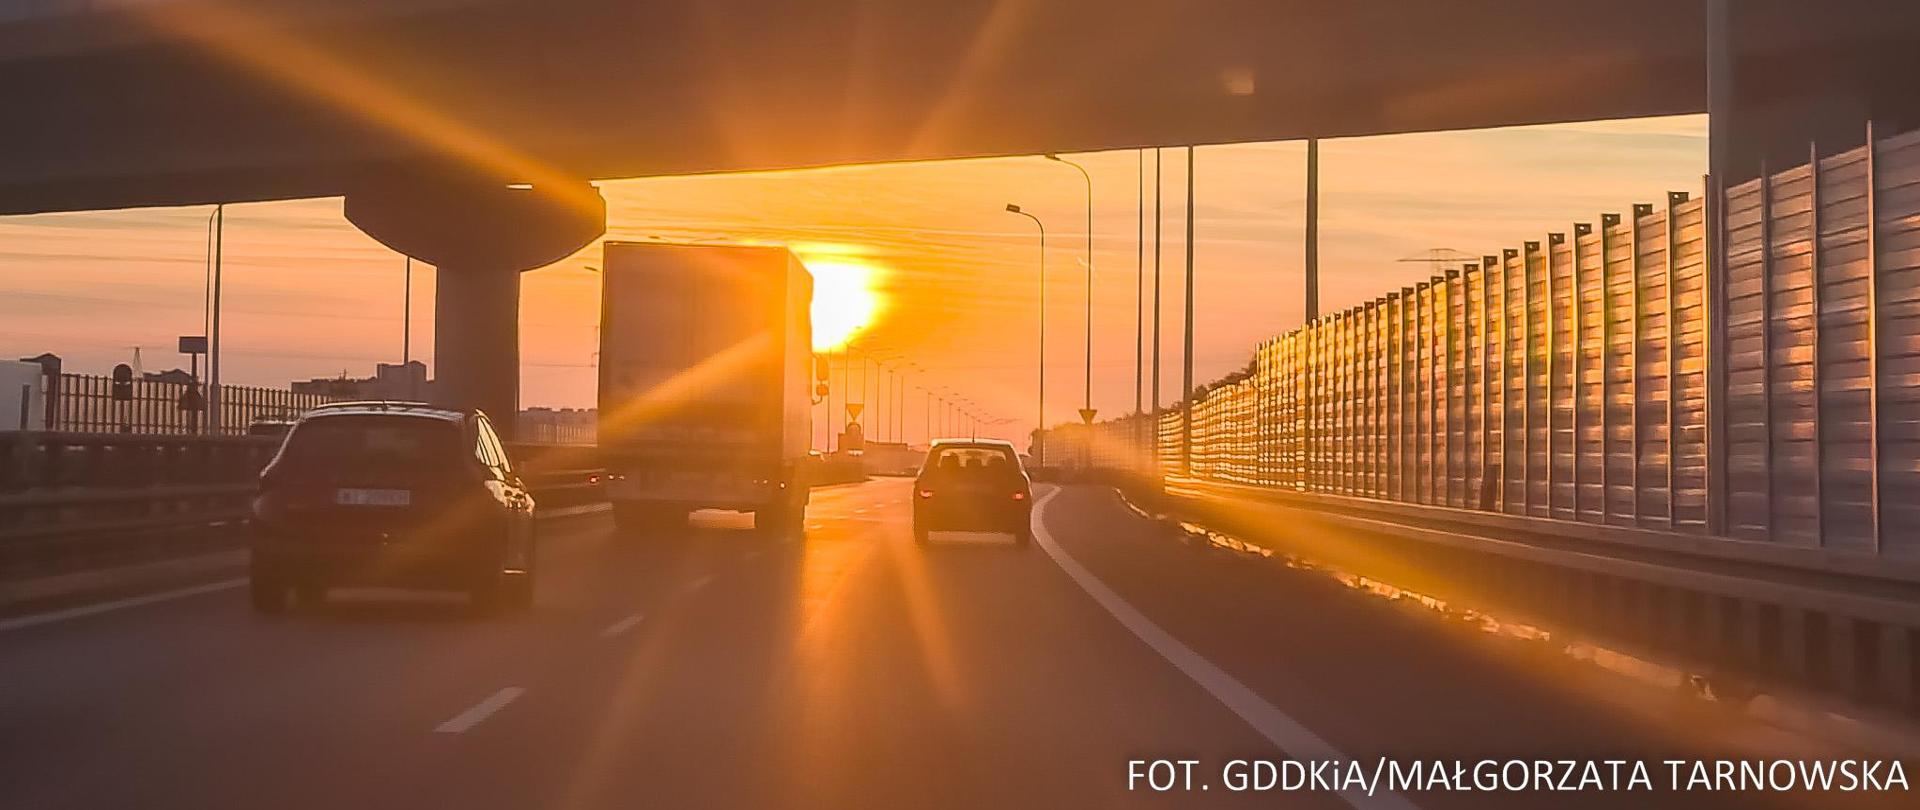 Widok z przodu samochodu na jezdnię drogi ekspresowej, po której jadą samochody. Na wprost świecące, zachodzące słońce.